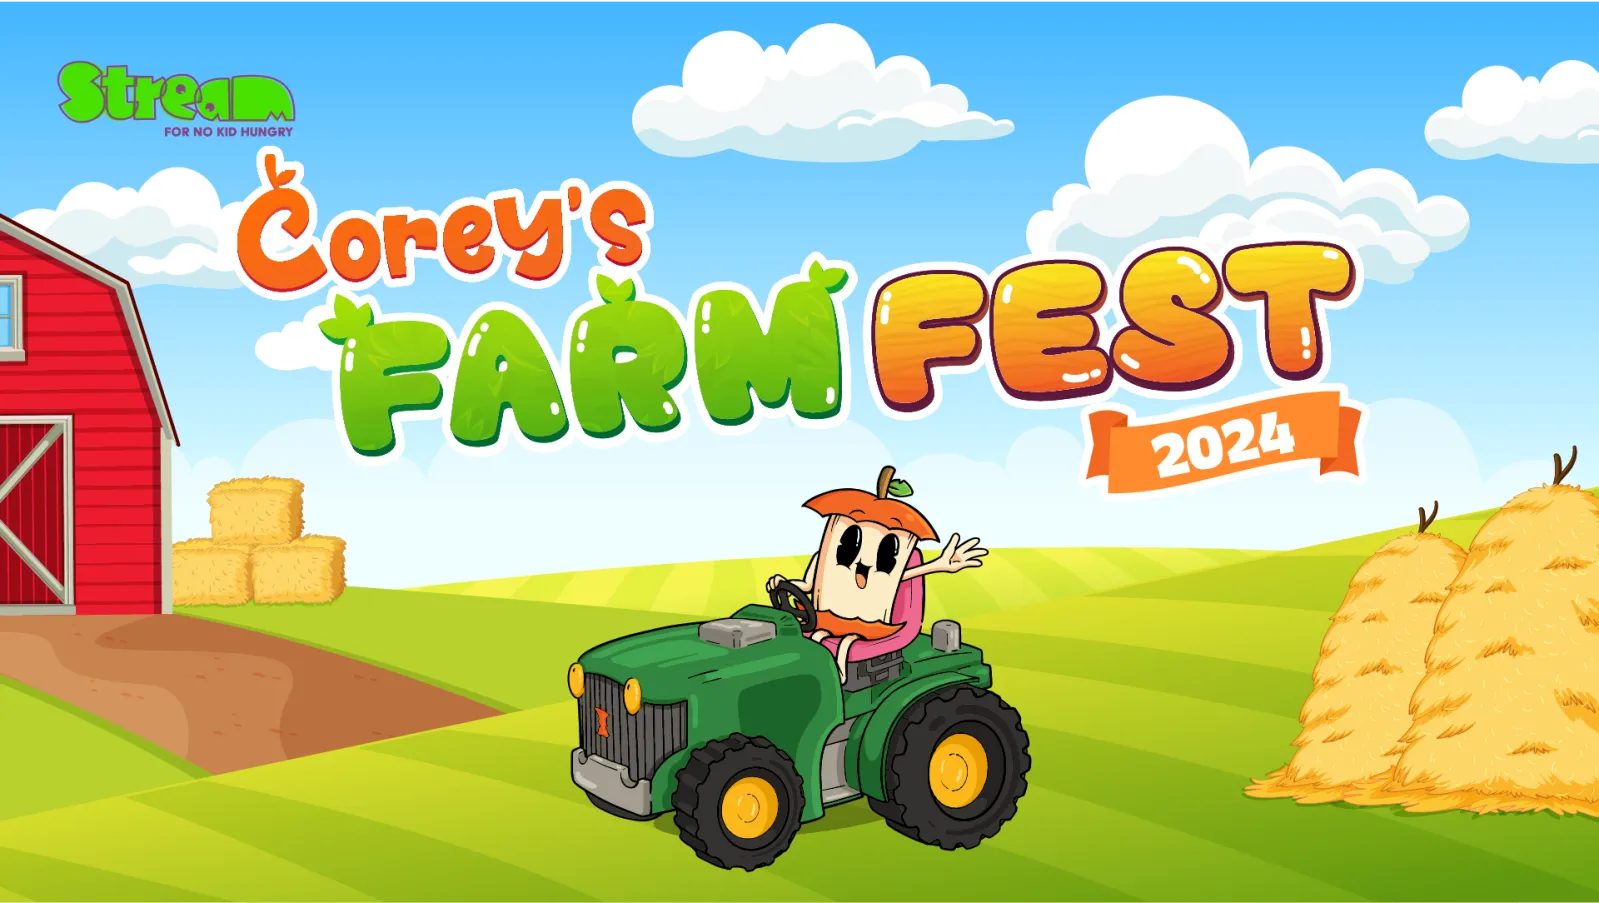 Join Corey's Farm Fest!